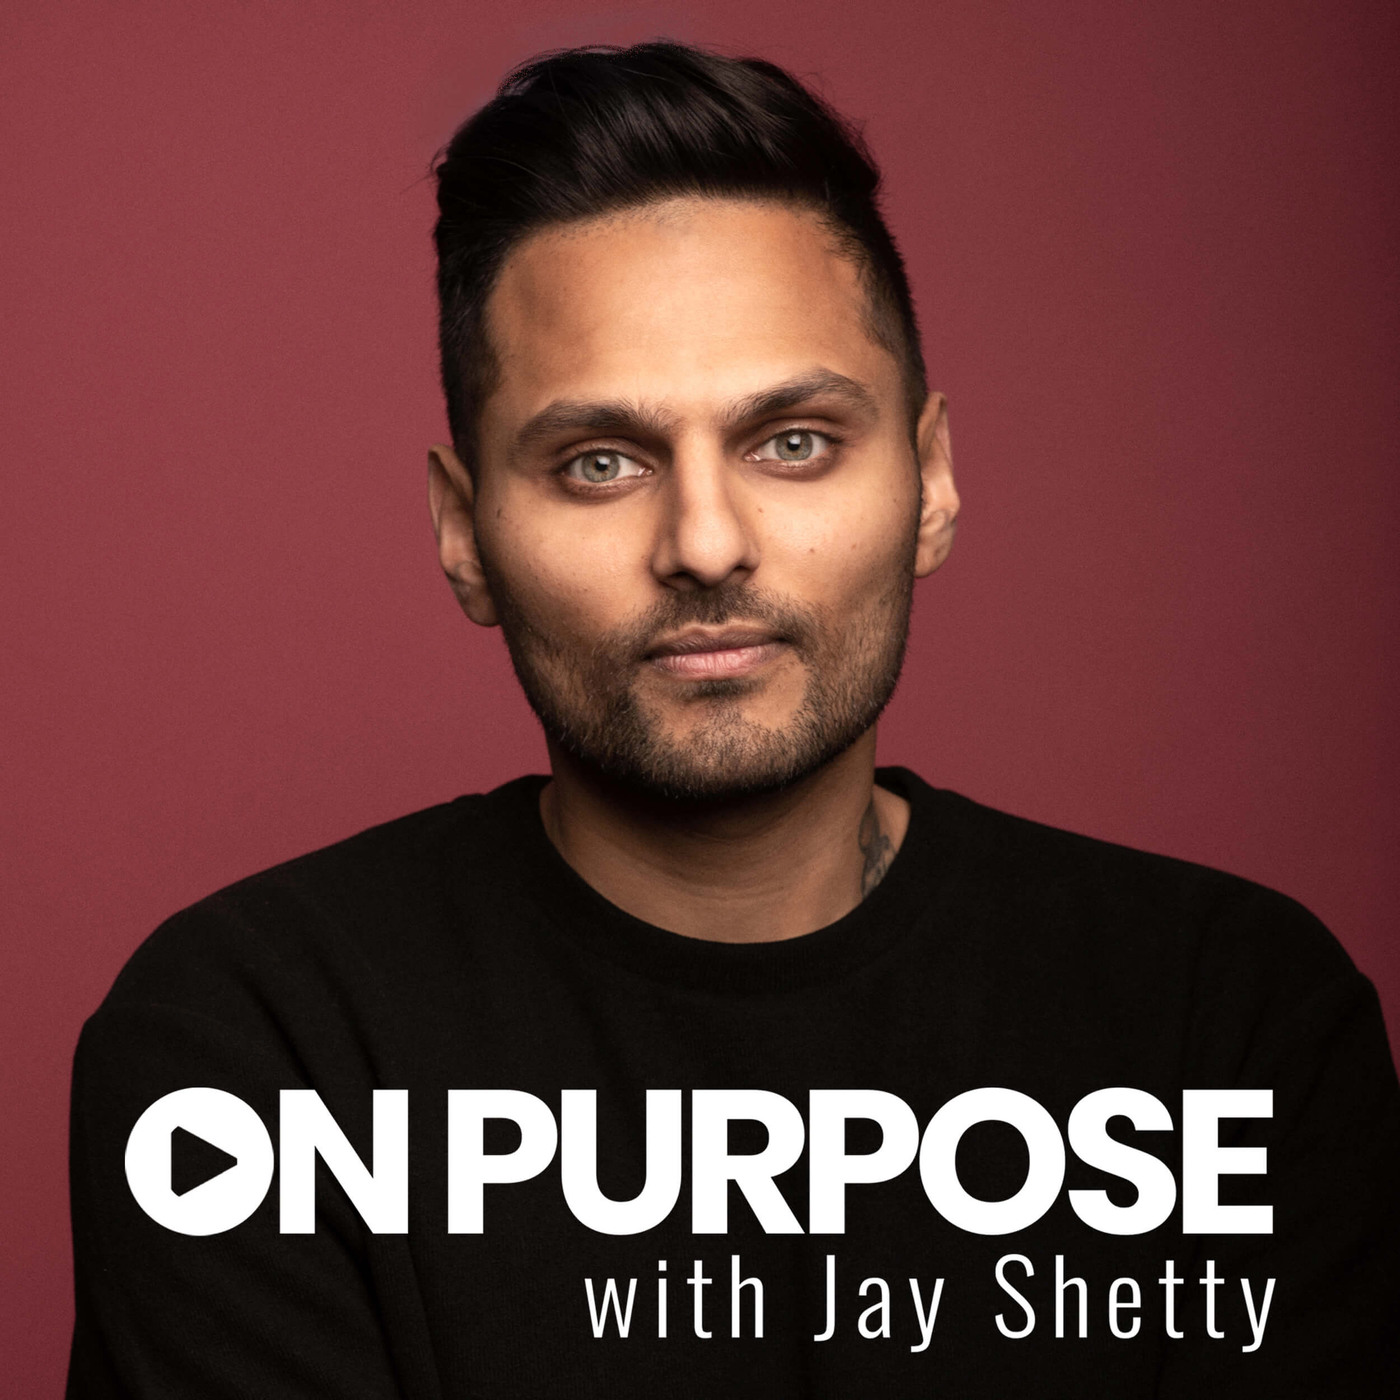 Jay Shetty | Leaders.com